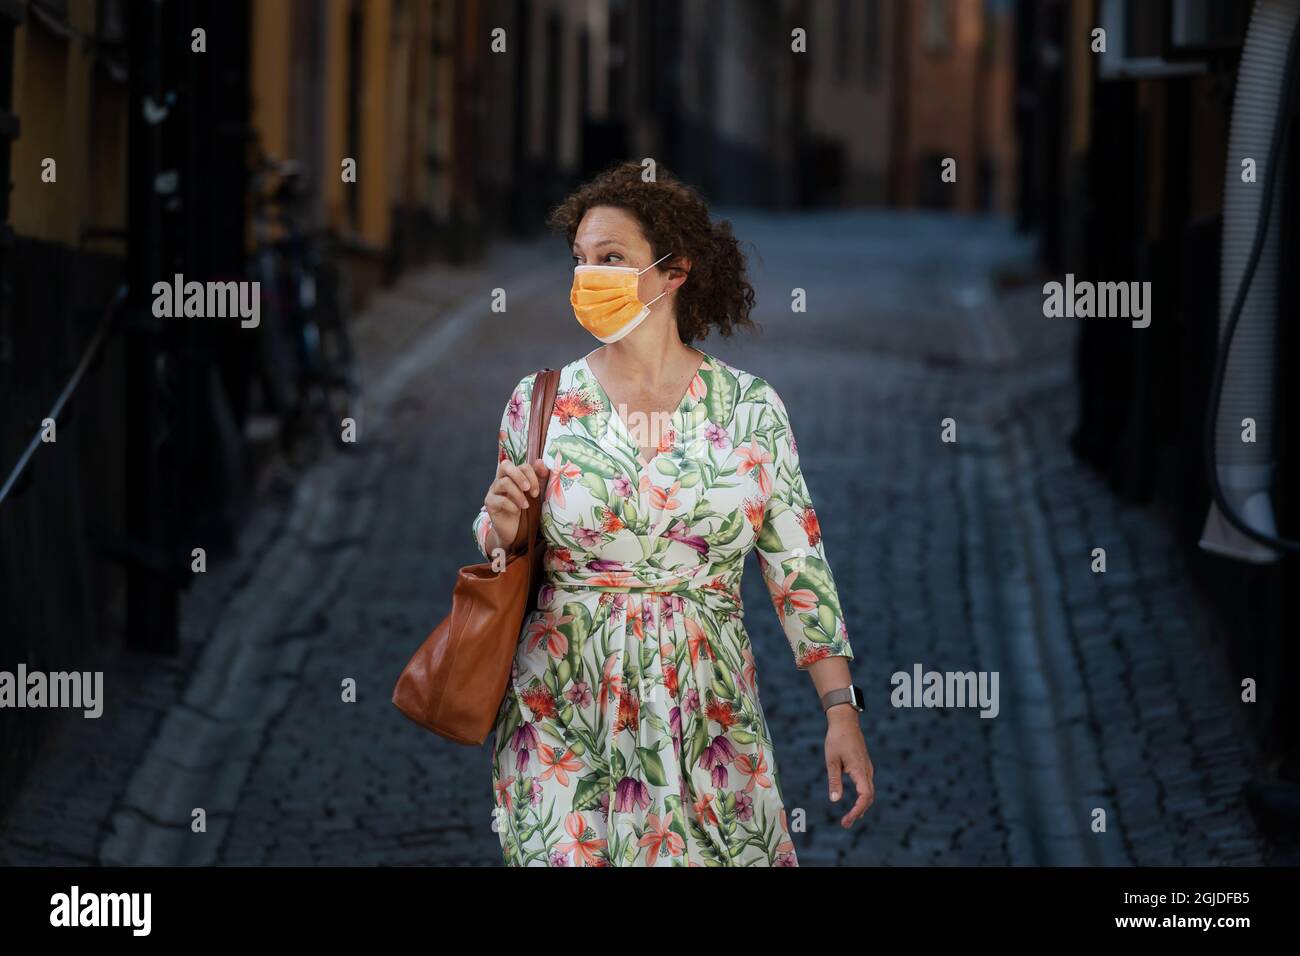 Une femme portant un masque de visite à Stockholm. Photo: Stina Stjernkvist / TT code 11610 Banque D'Images